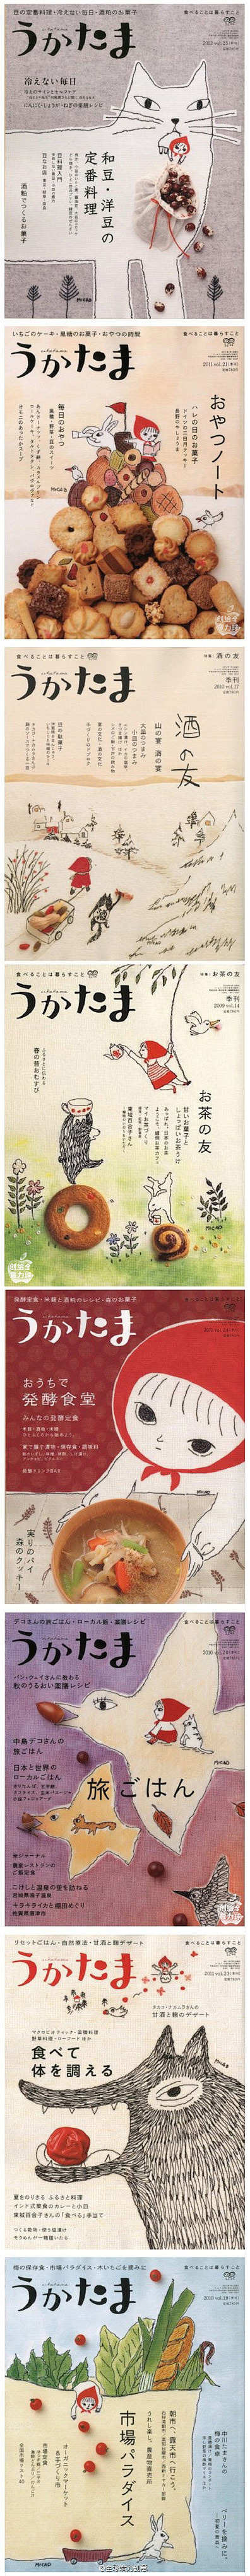 日本食物杂志封面